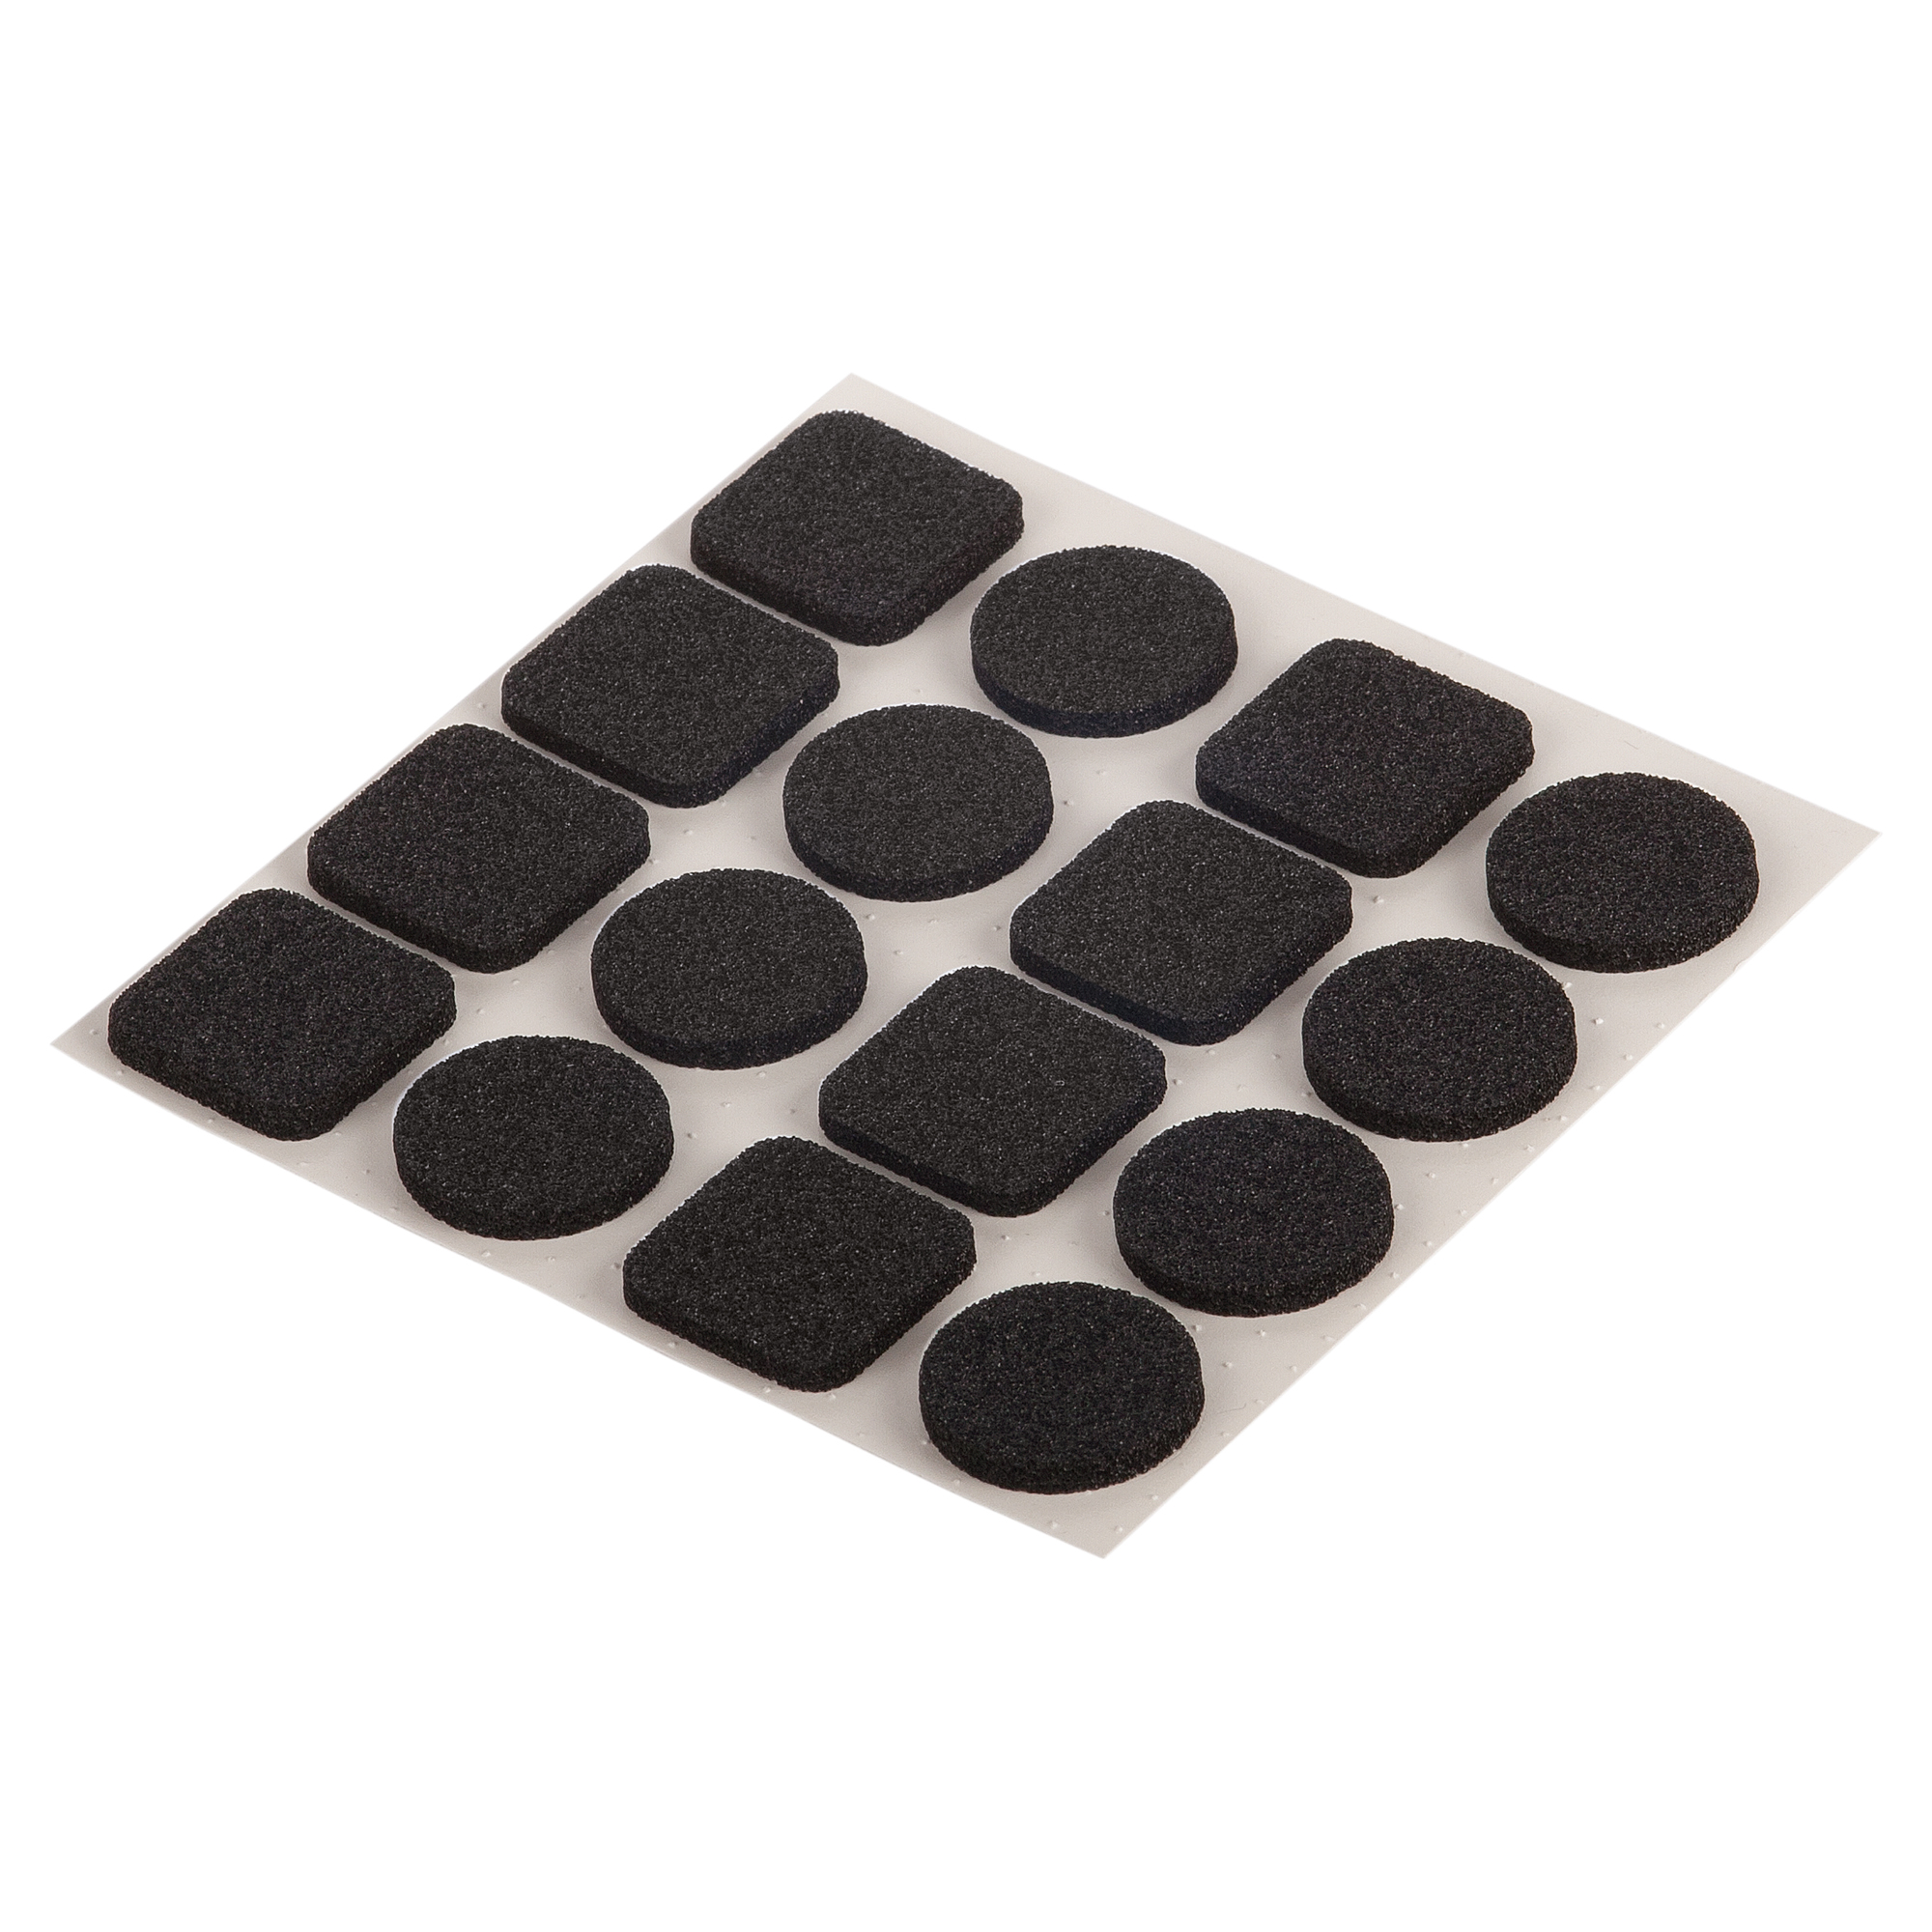 Antirutsch-Pads selbstklebend schwarz Ø 20 mm / 20 x 20 mm 16 Stück + product picture